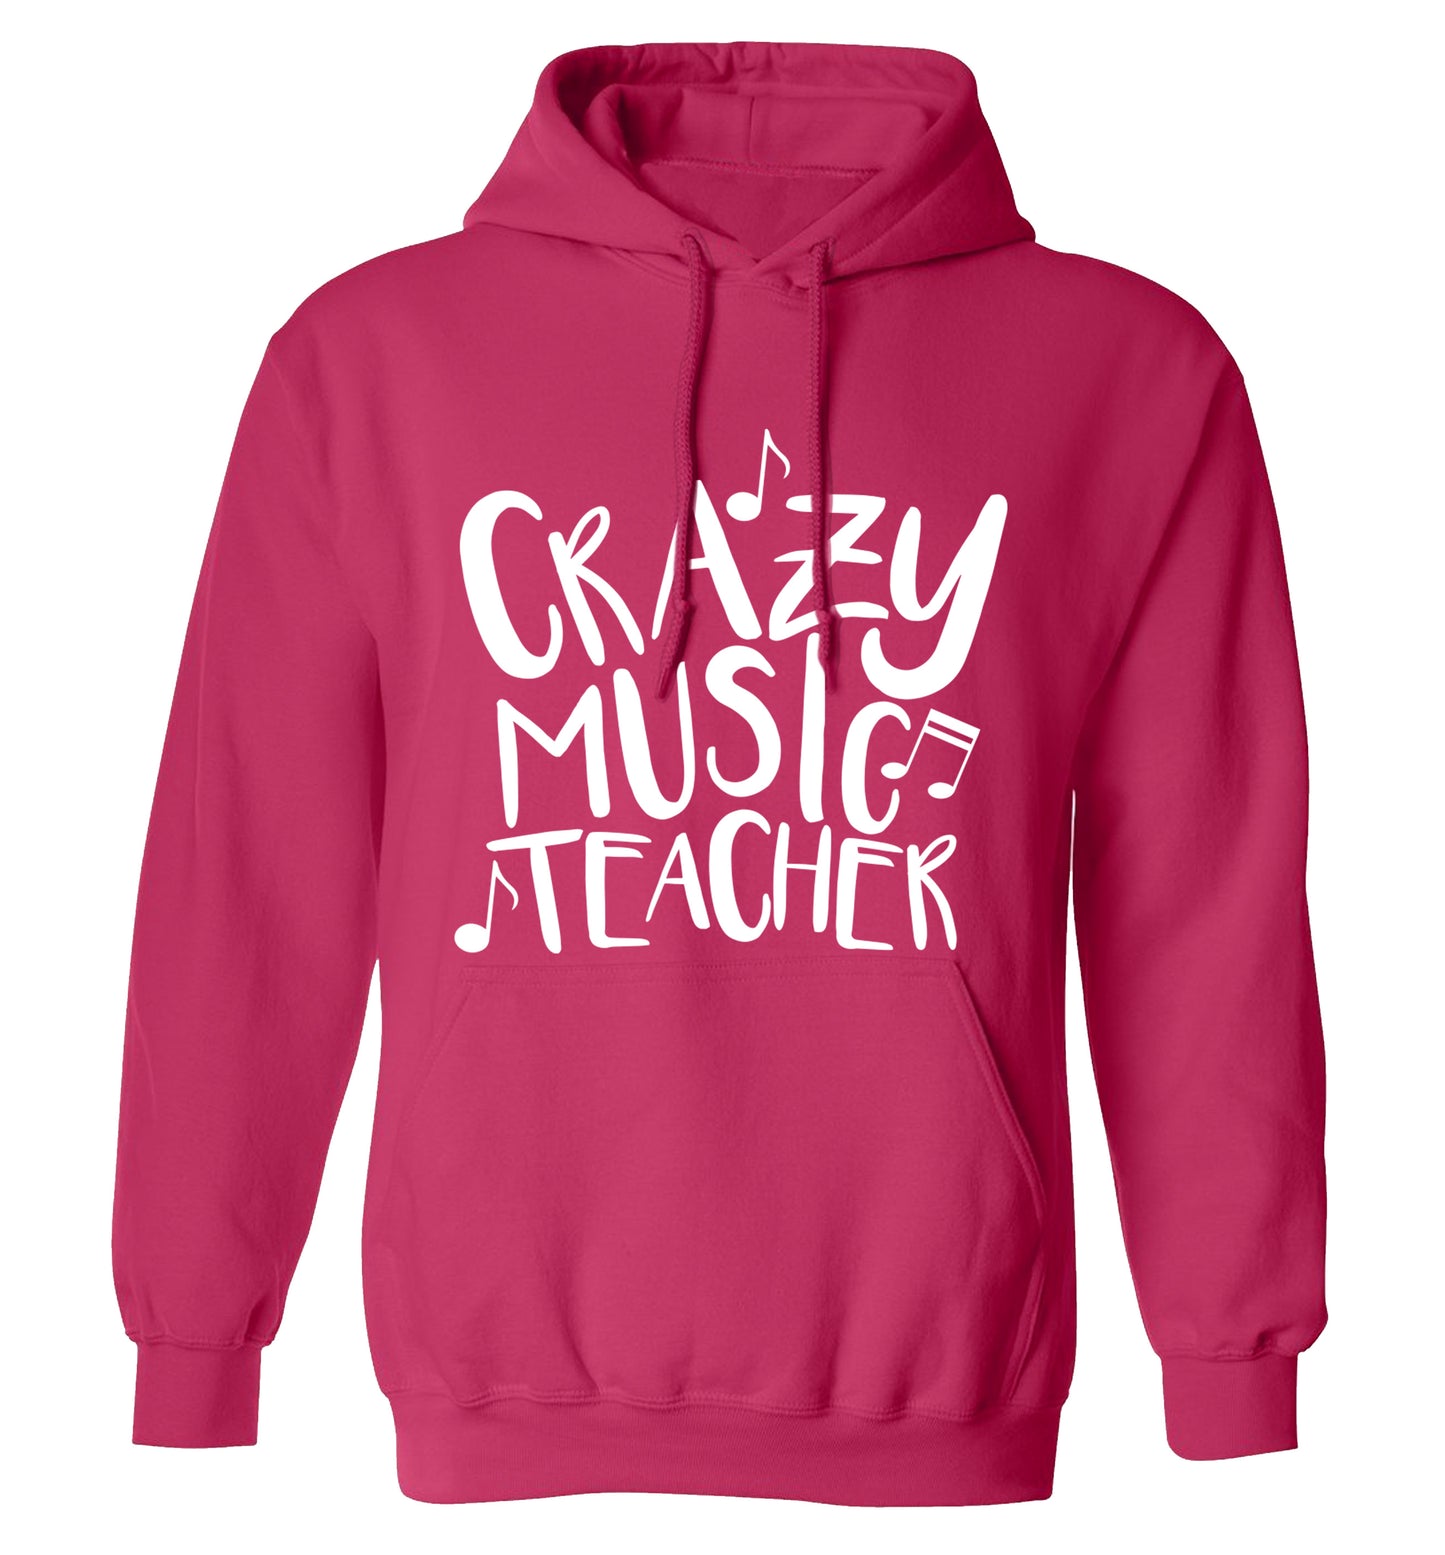 Crazy music teacher adults unisex pink hoodie 2XL